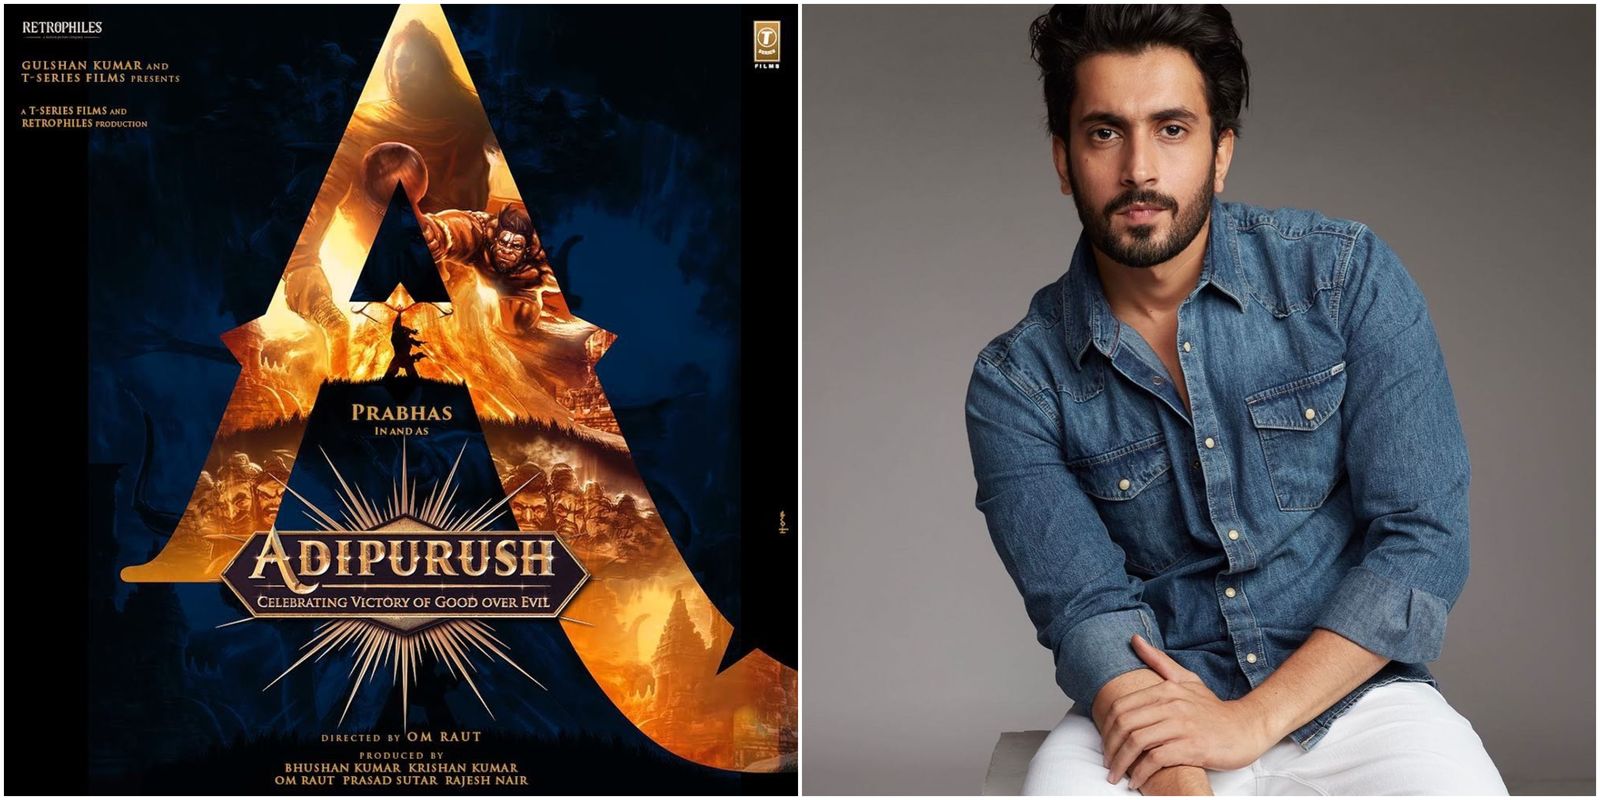 आदिपुरुष: प्रभास और सैफ अली खान स्टारर फिल्म में सनी सिंह की हुई एंट्री, ये होगा रोल?